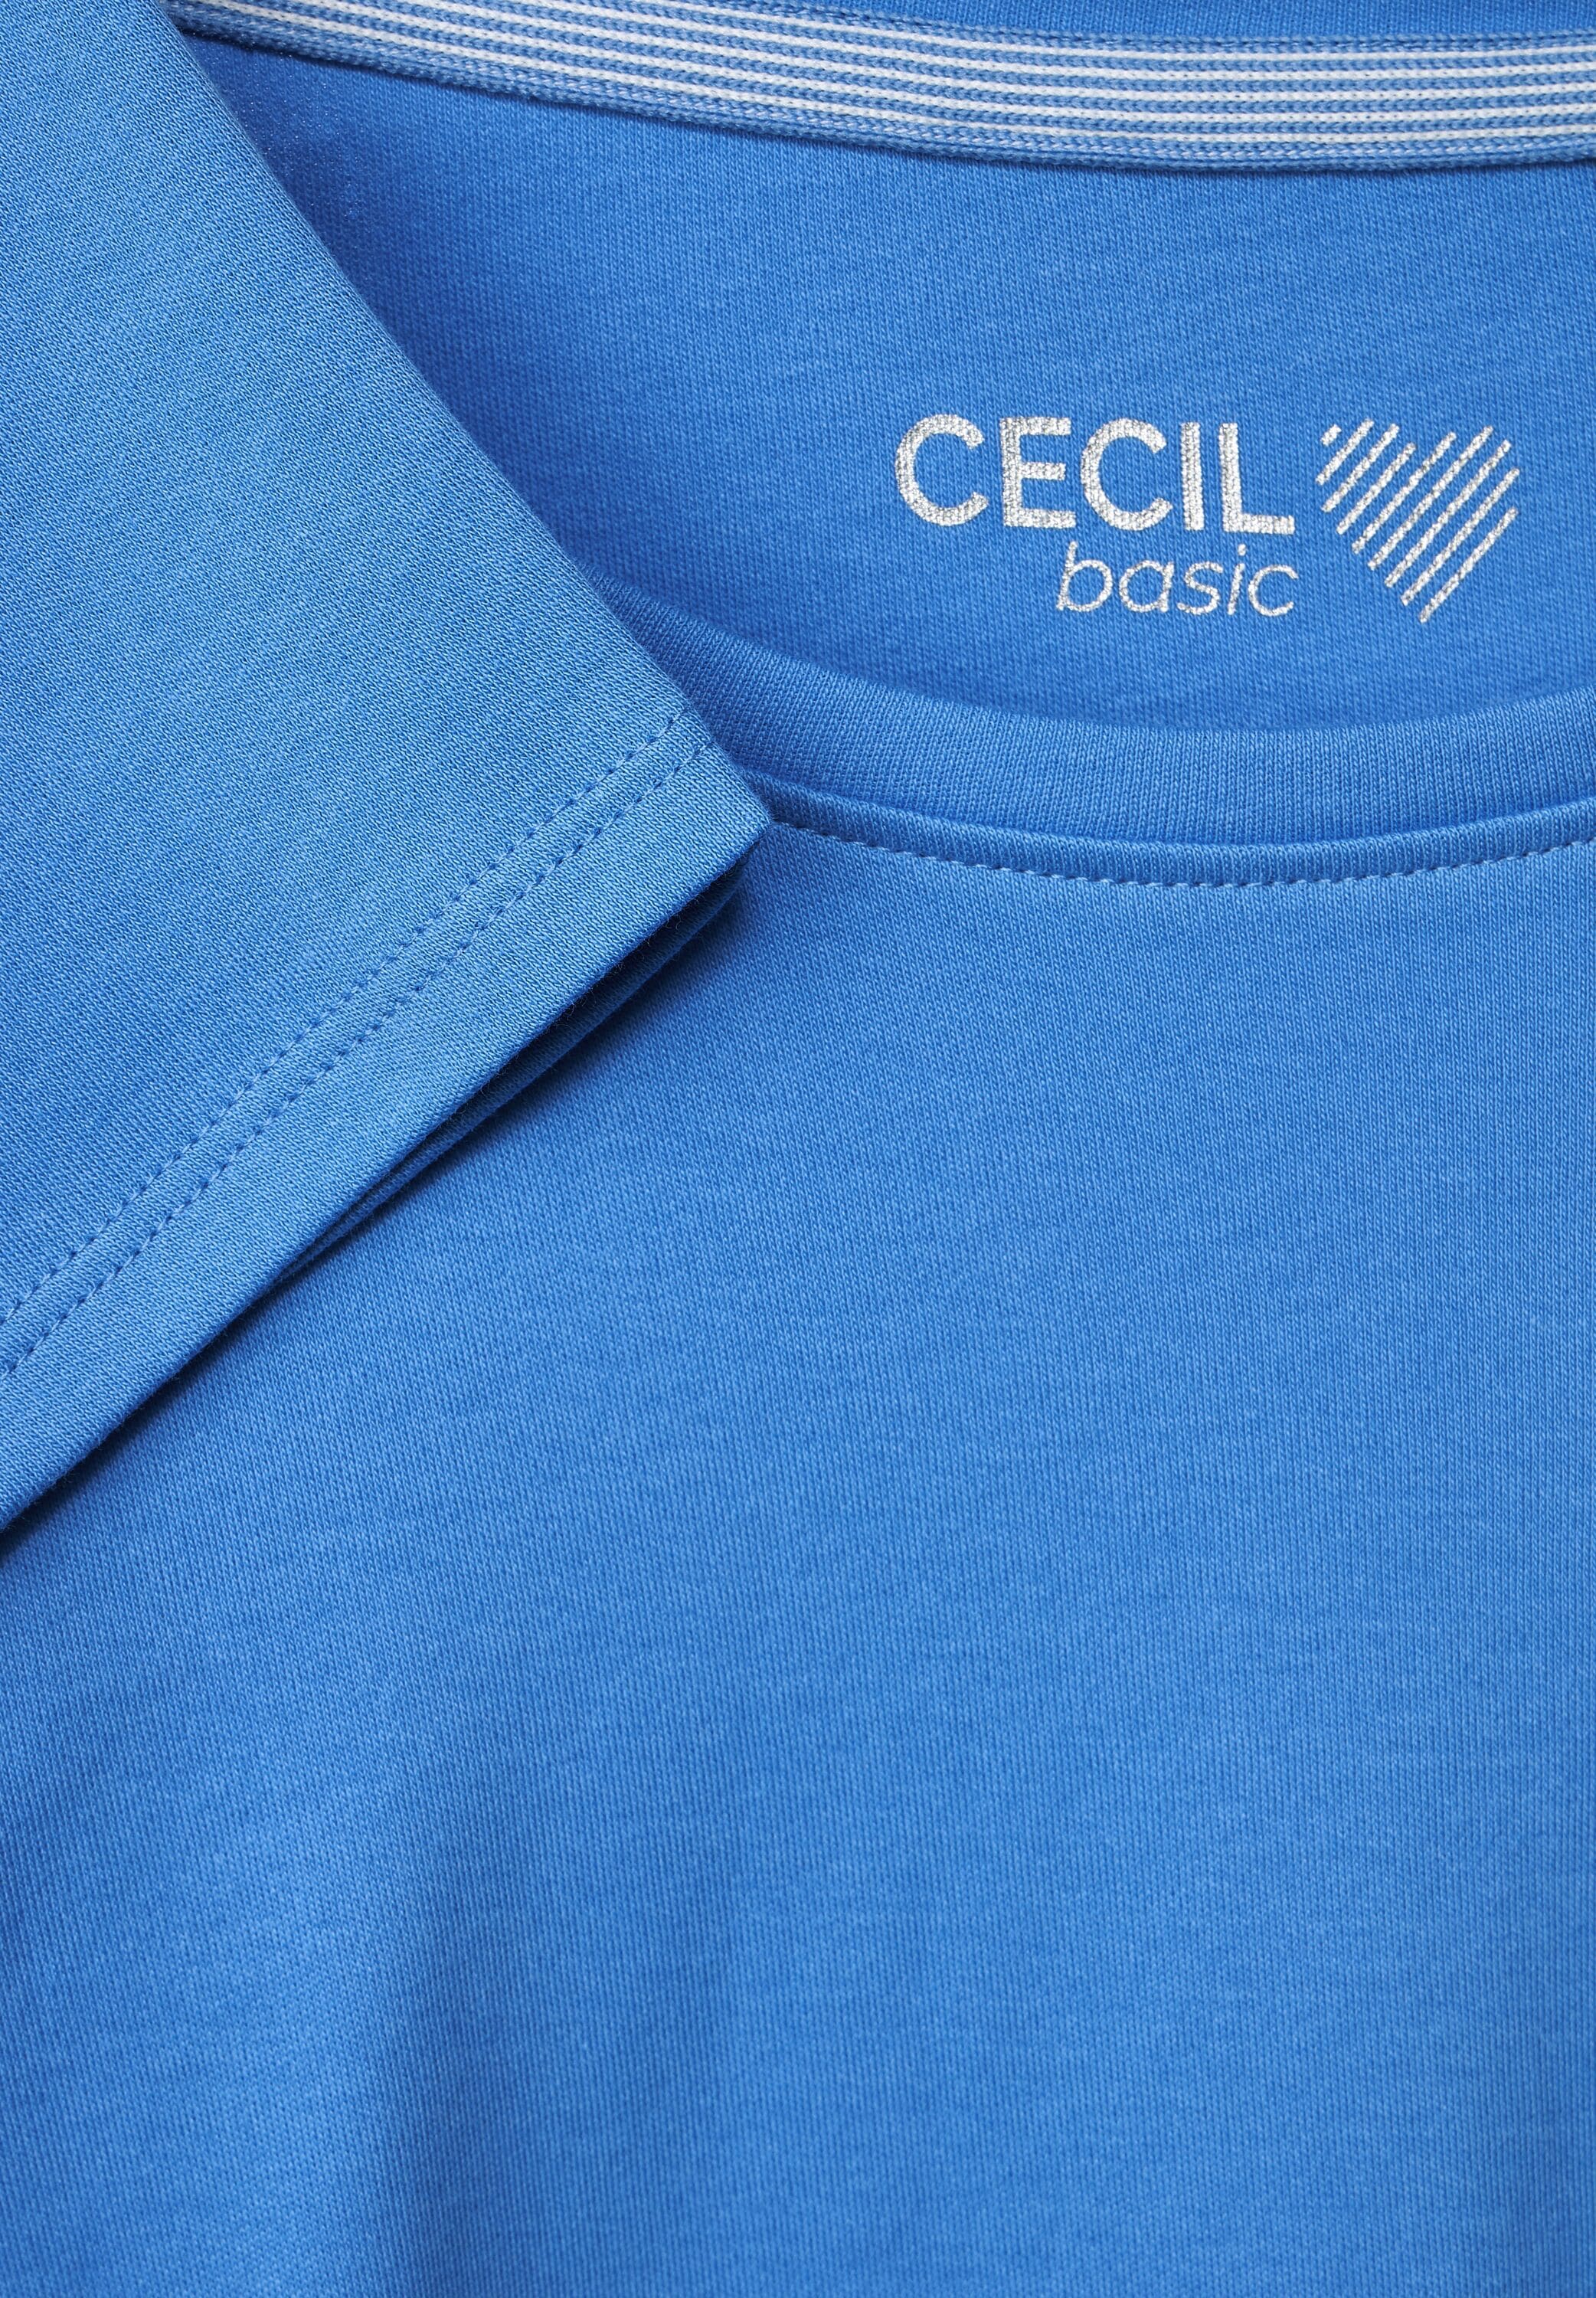 Baumwolle reiner 3/4-Arm-Shirt, aus Cecil online